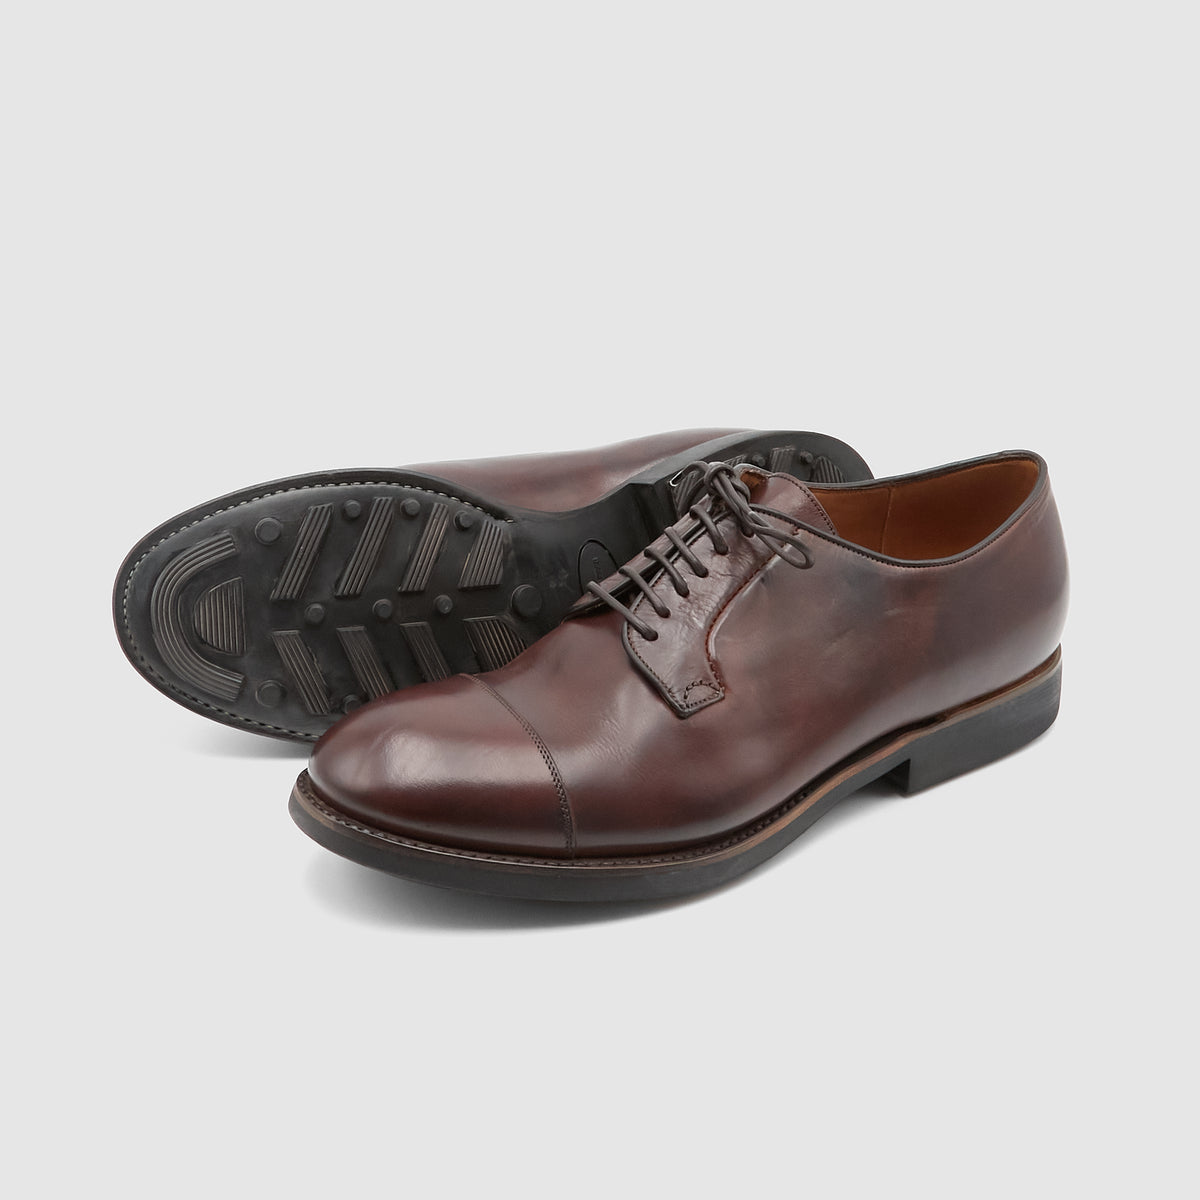 Silvano Sassetti Classic Oxford Shoe with Commando Sole